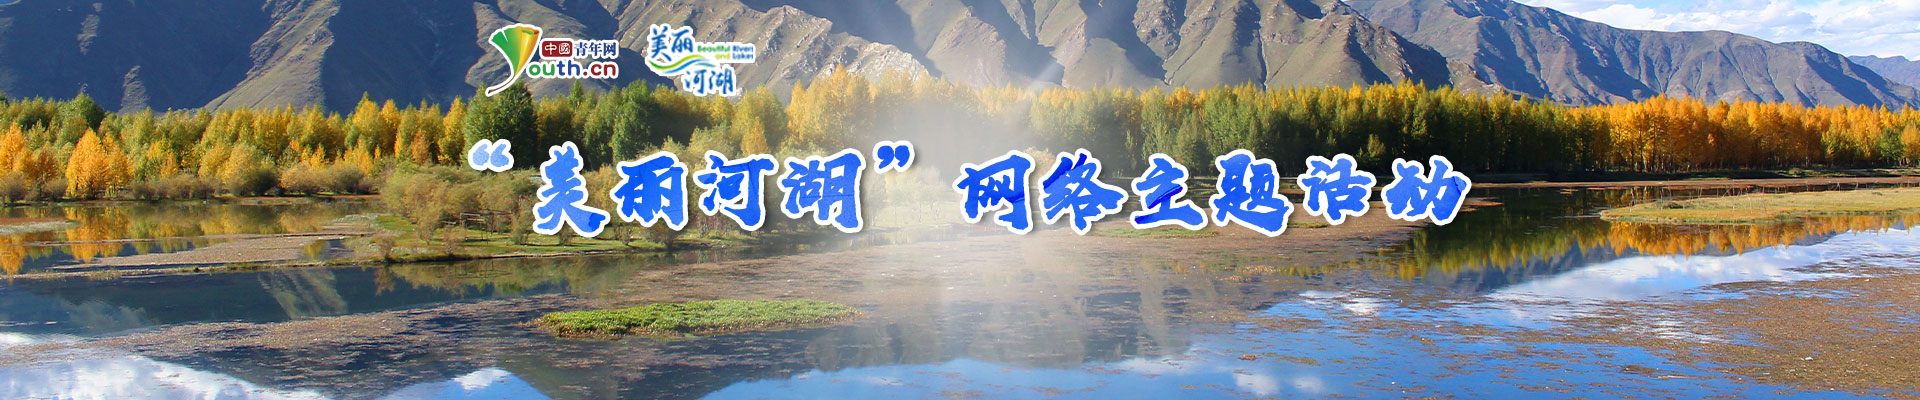 美丽河湖banner.jpg